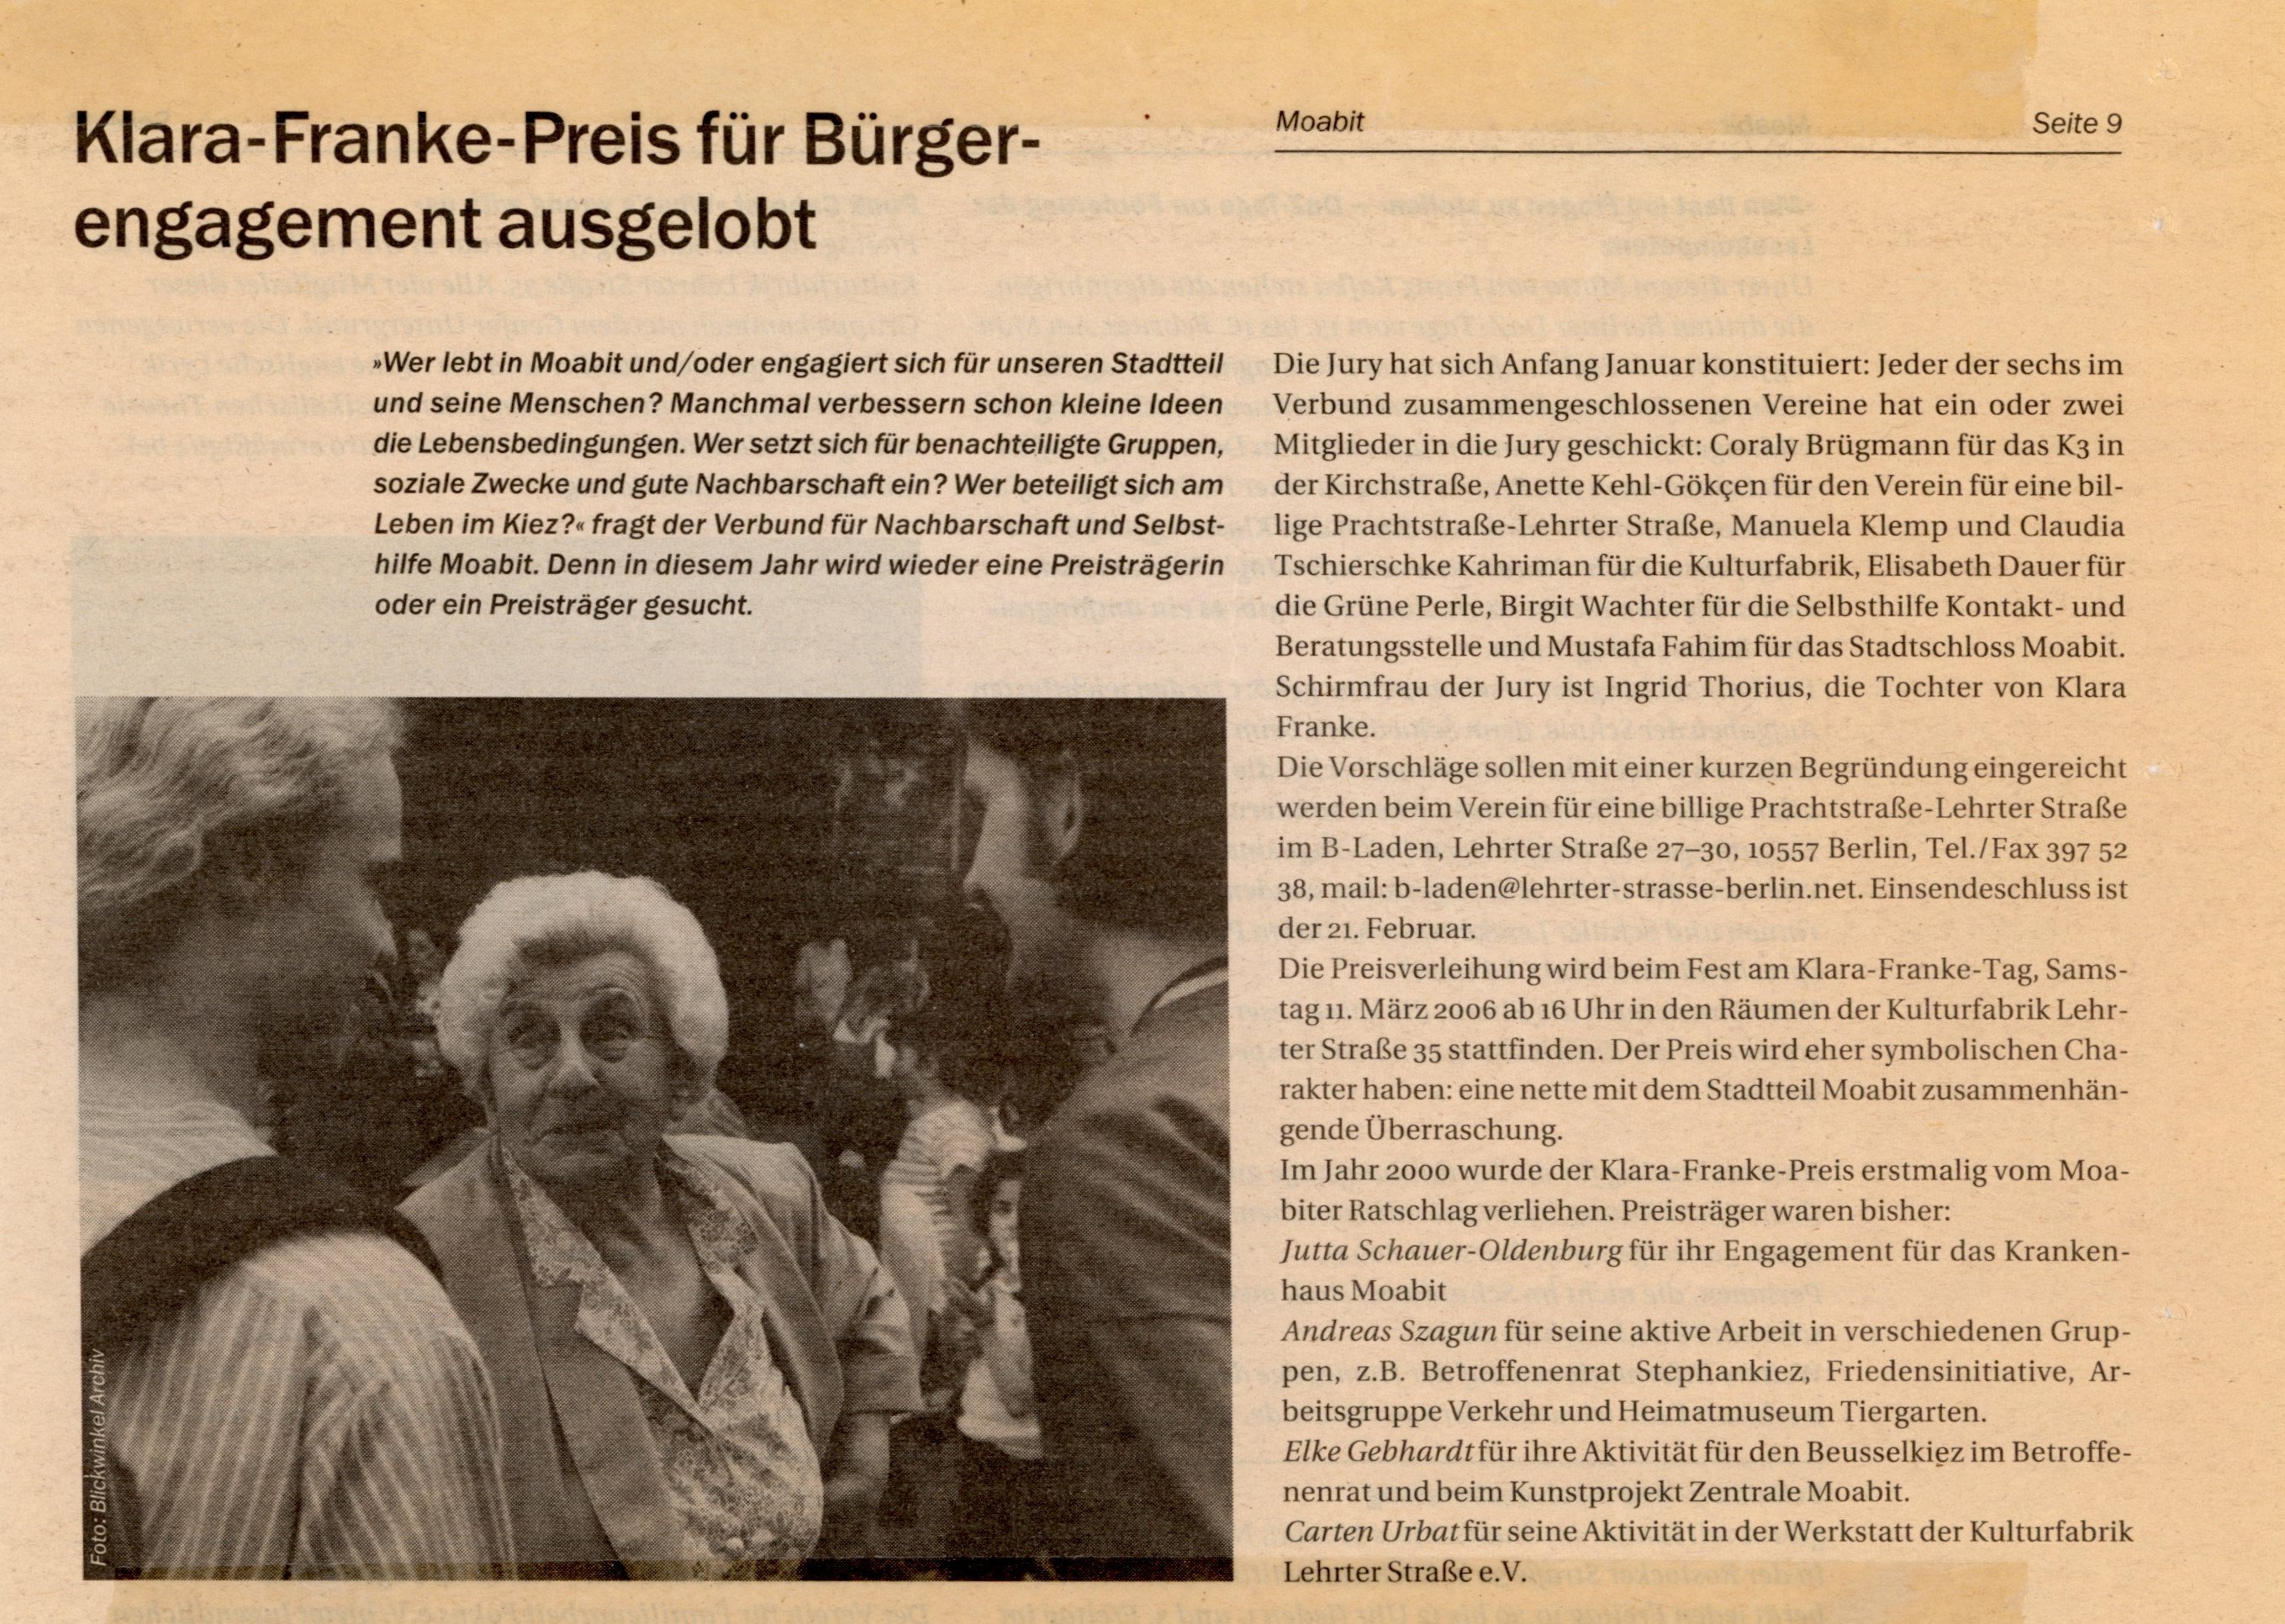 Artikel über die Auslobung des Klara-Franke-Preis (B-Laden CC BY-NC-SA)